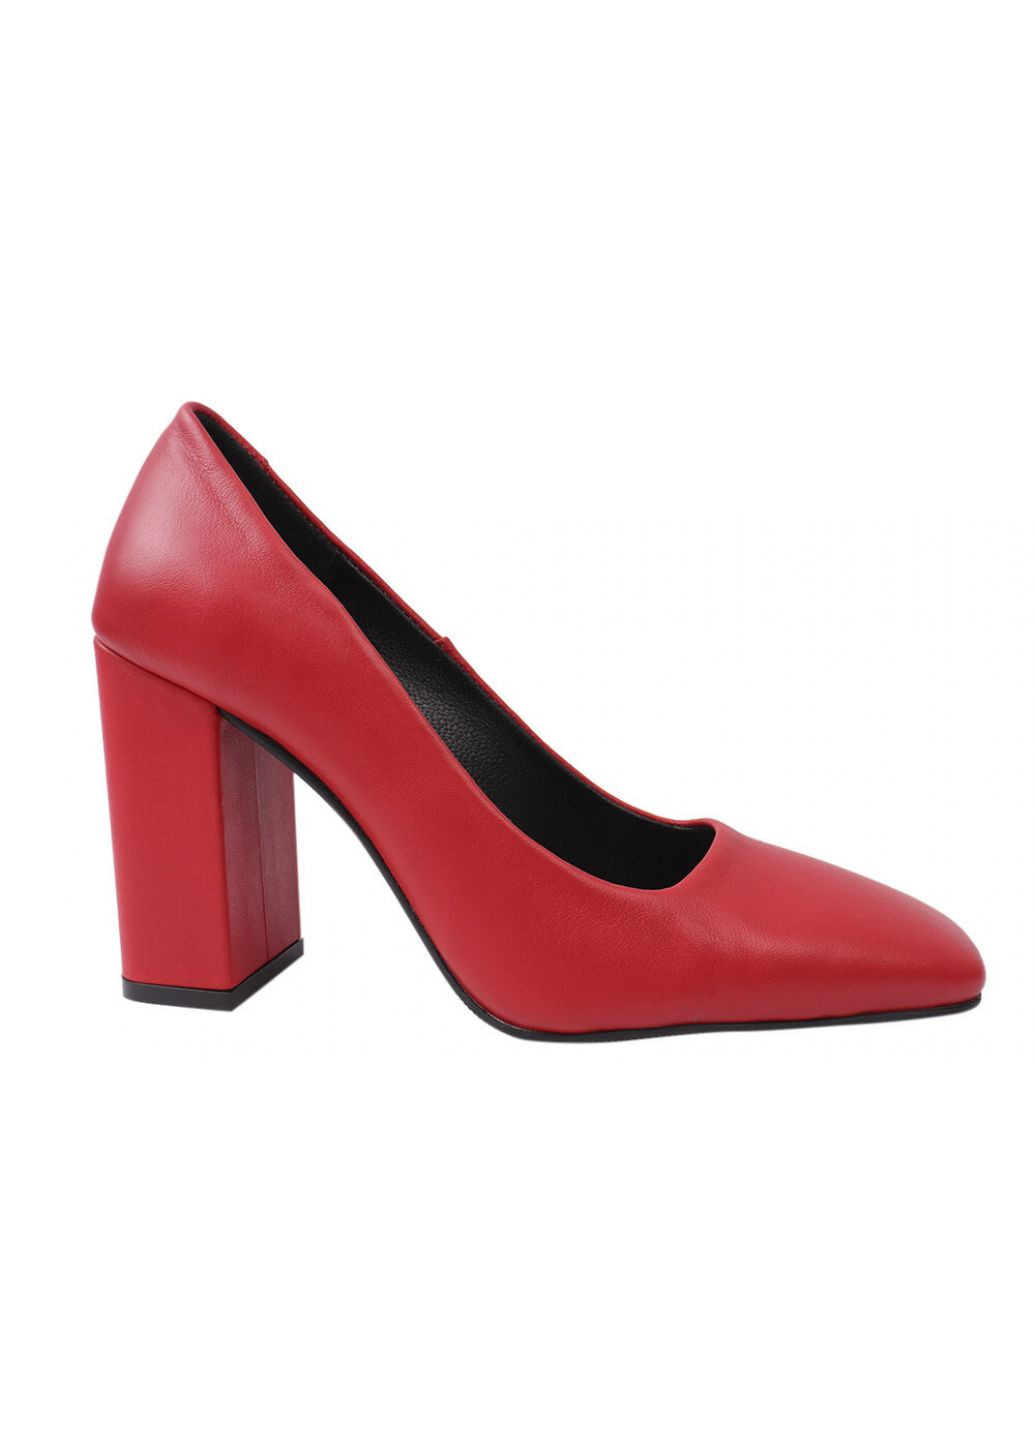 Туфли женские из натуральной кожи, на большом каблуке, цвет красный, Турция Da Cota DaCoTa